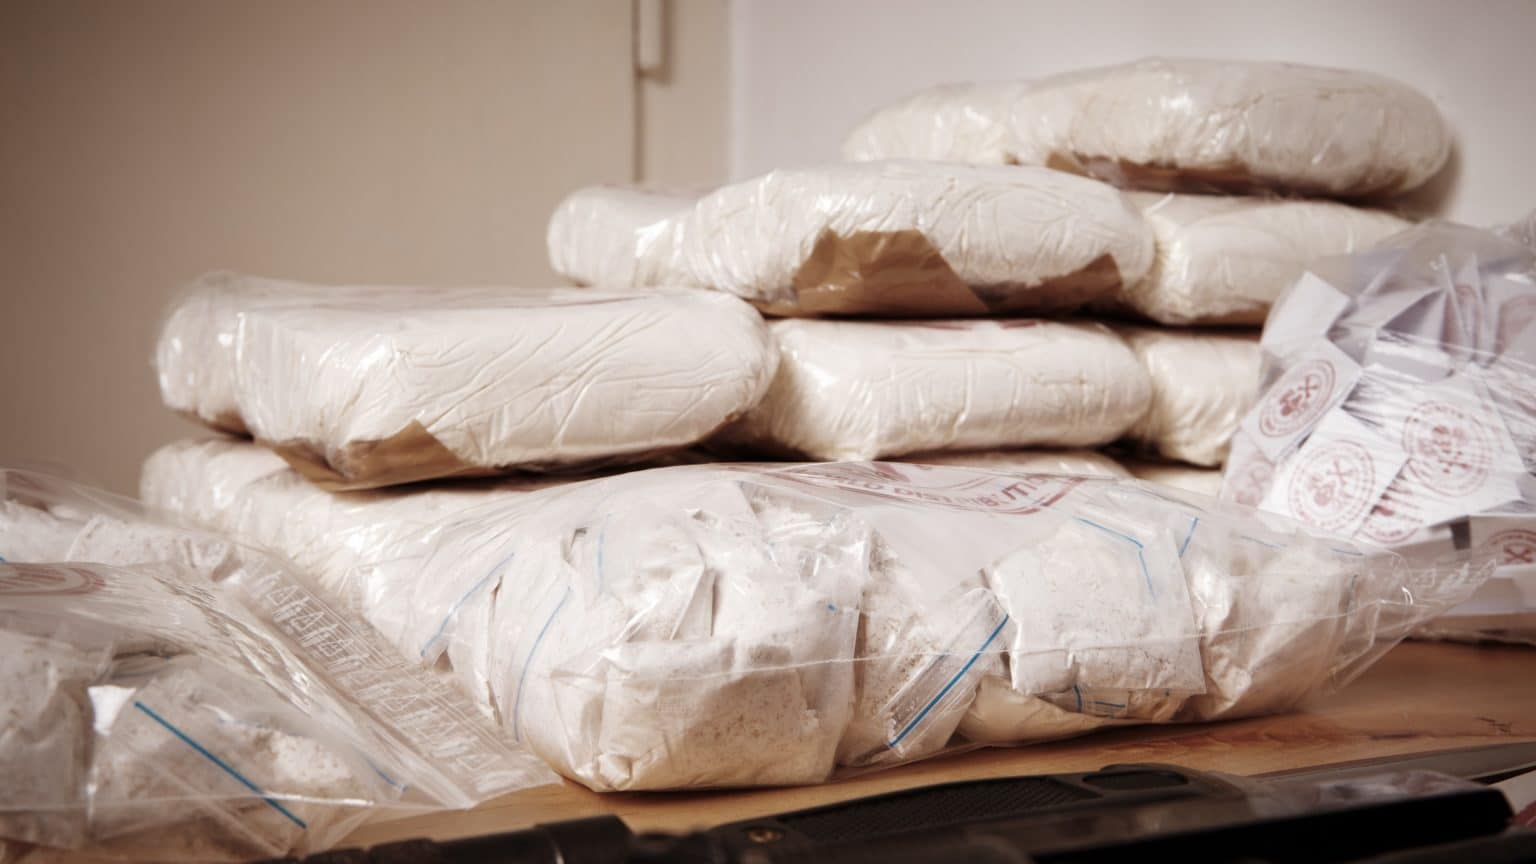 Dubrovnik: Policija u vozilu visoke klase pronašla gotovo 20 kg kokaina